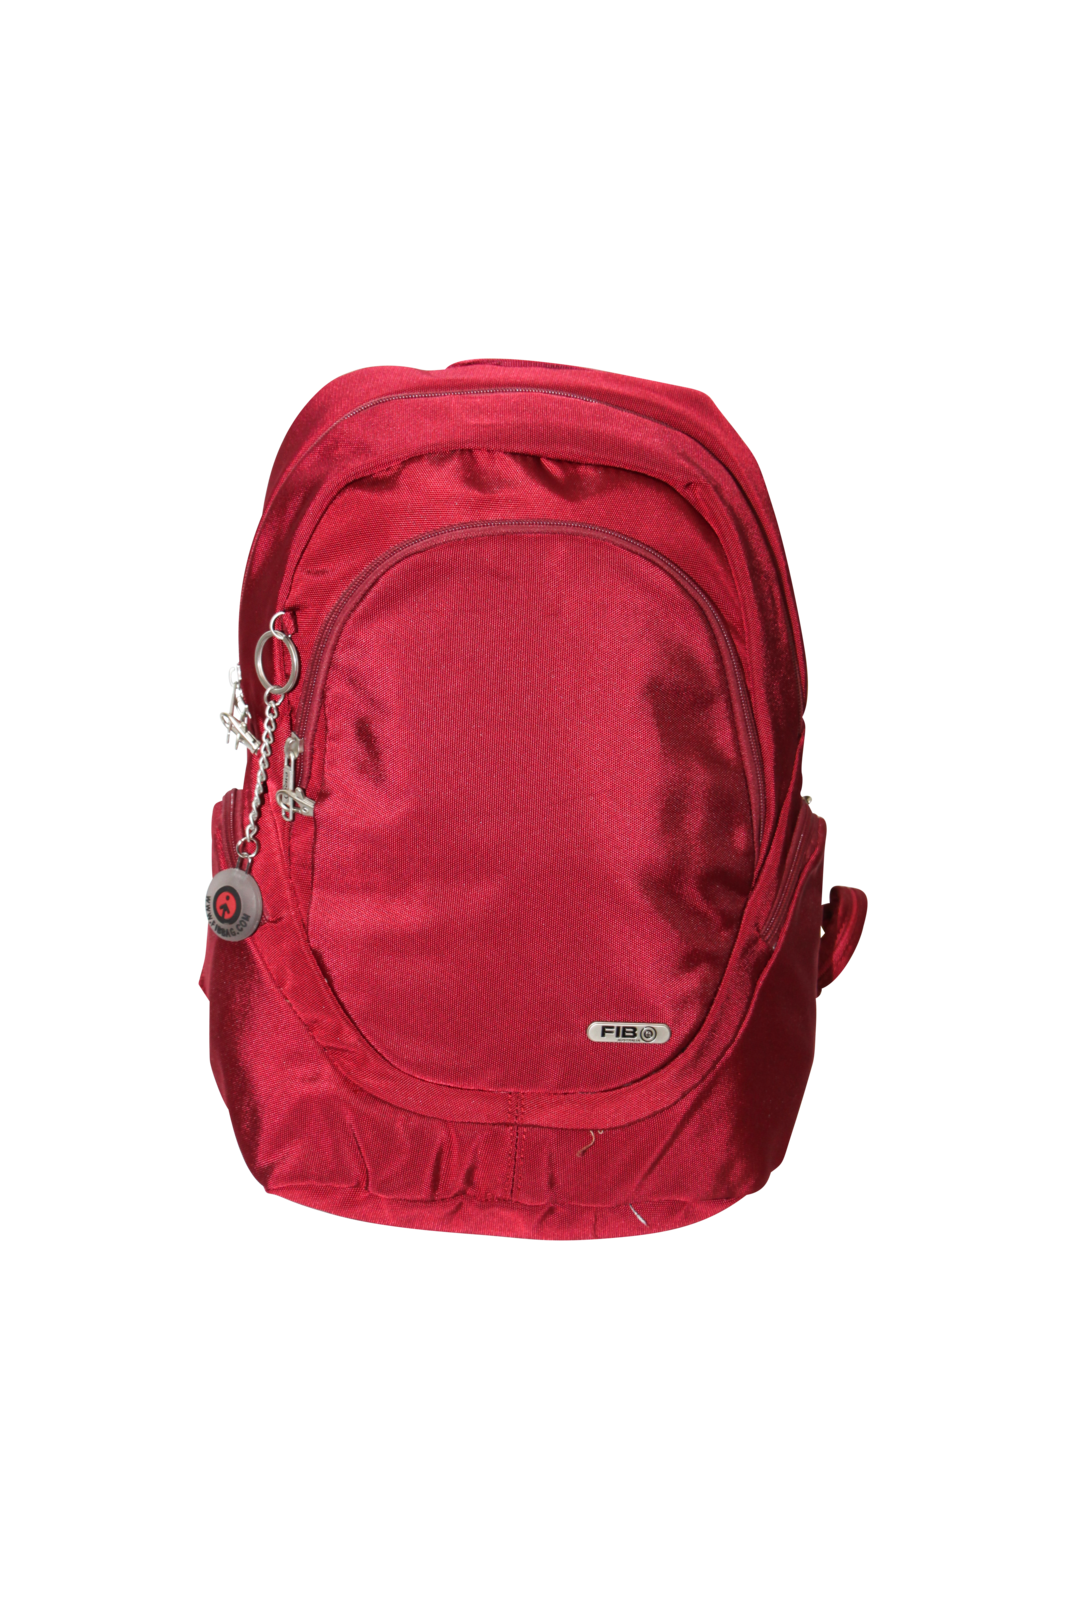 Mens Backpack Travel Rucksack Shoulder Bag - Burgundy